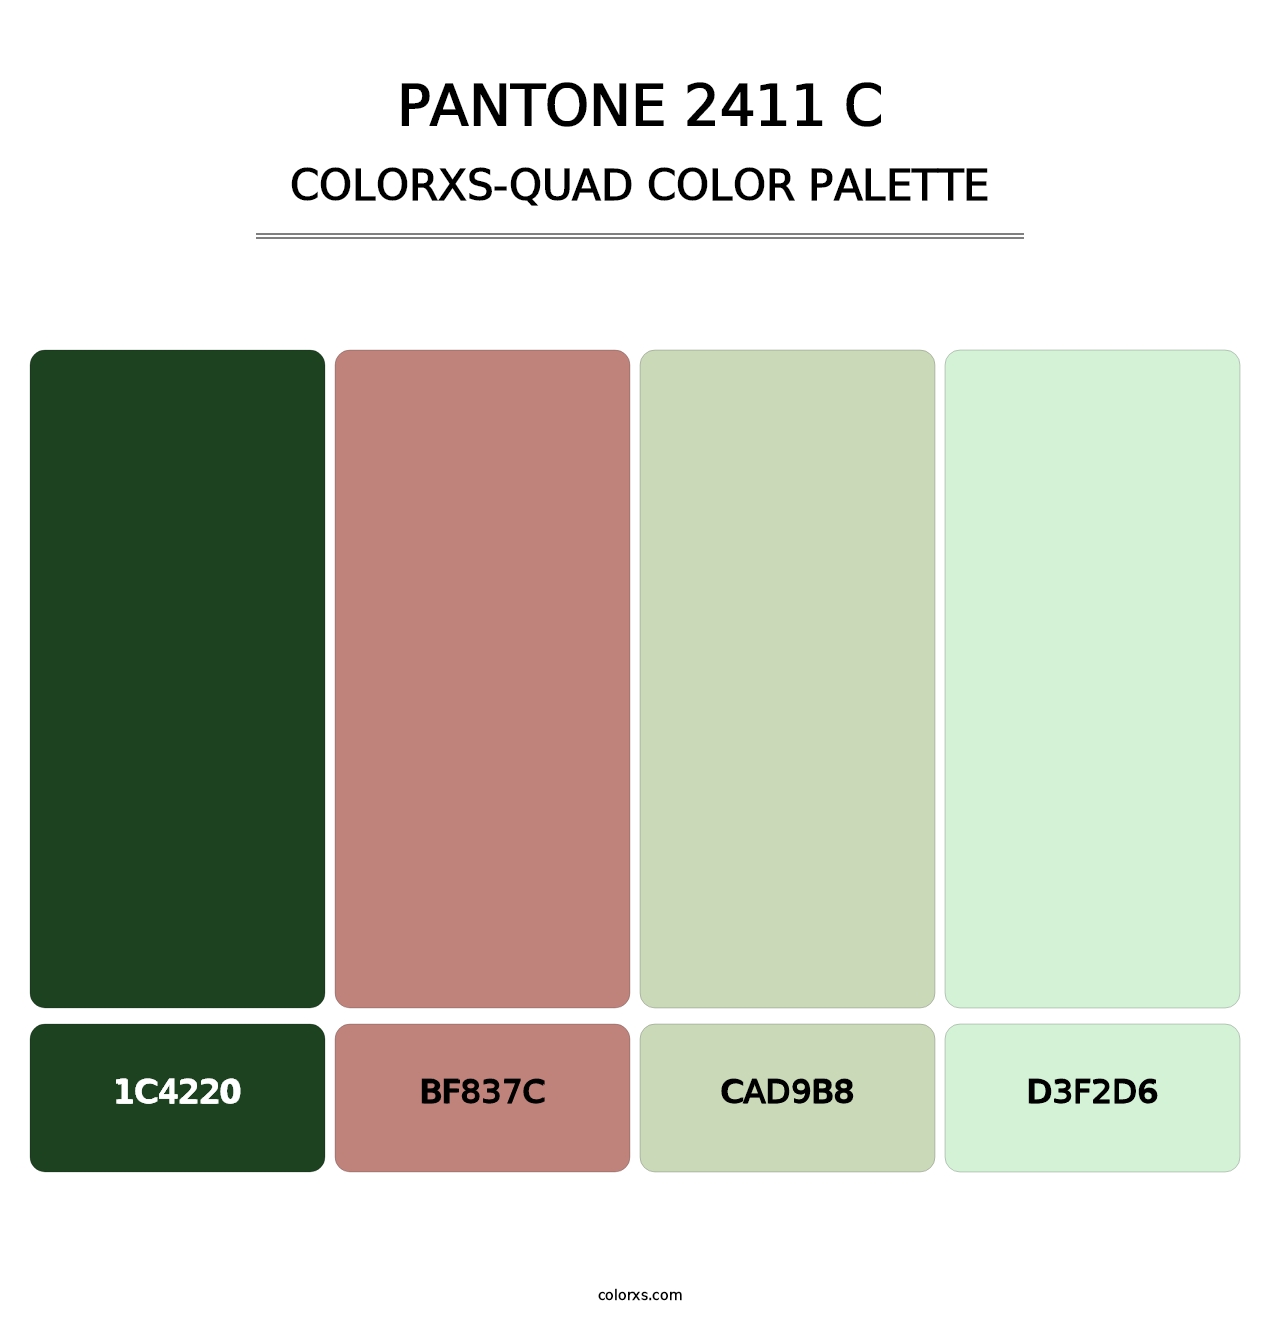 PANTONE 2411 C - Colorxs Quad Palette